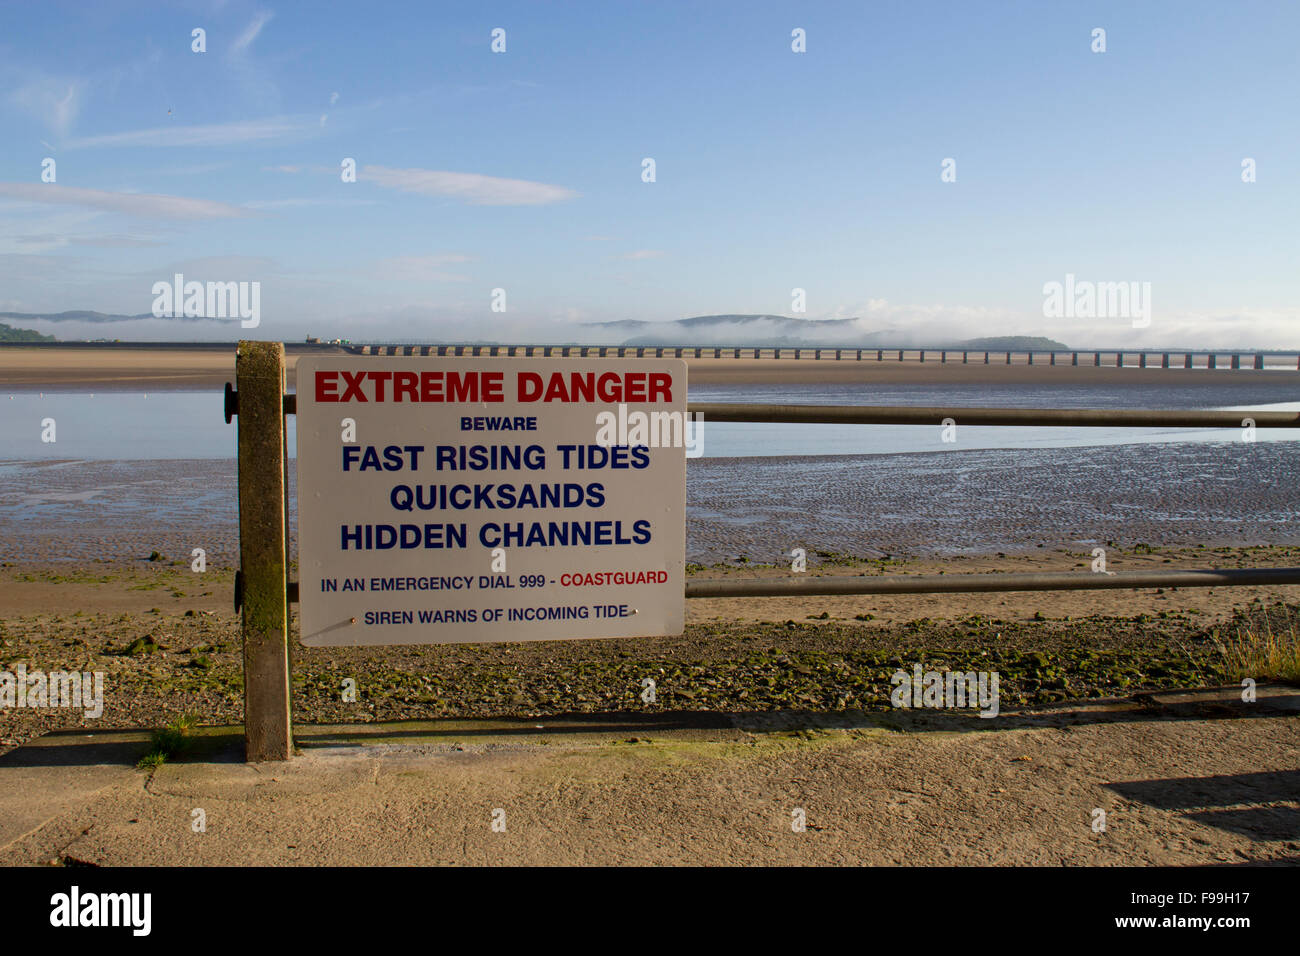 'Extrême DANGER' avertissement signe des marées, quicksands, et câble dans le Kent estuaire. Arnside, Cumbria, Angleterre, juin. Banque D'Images